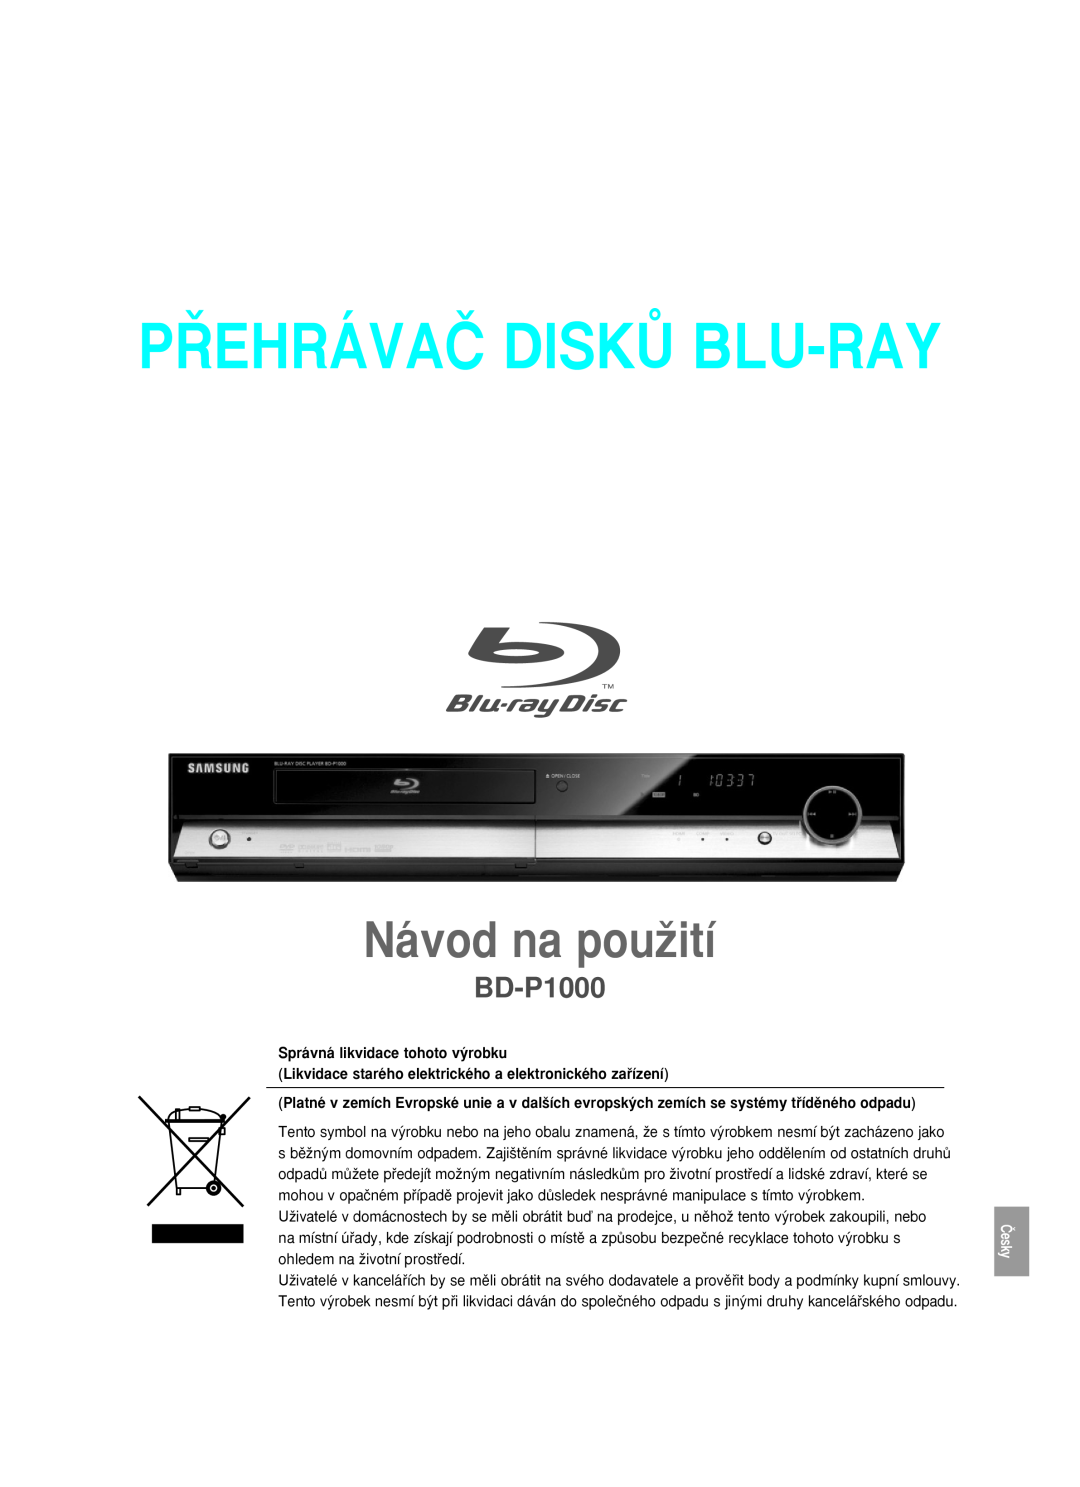 Samsung BD-P1000/XEG, BD-P1000/XET manual P¤EHRÁVAâ DISKÒ BLU-RAY, Návod na pouÏití, Správná likvidace tohoto v˘robku 